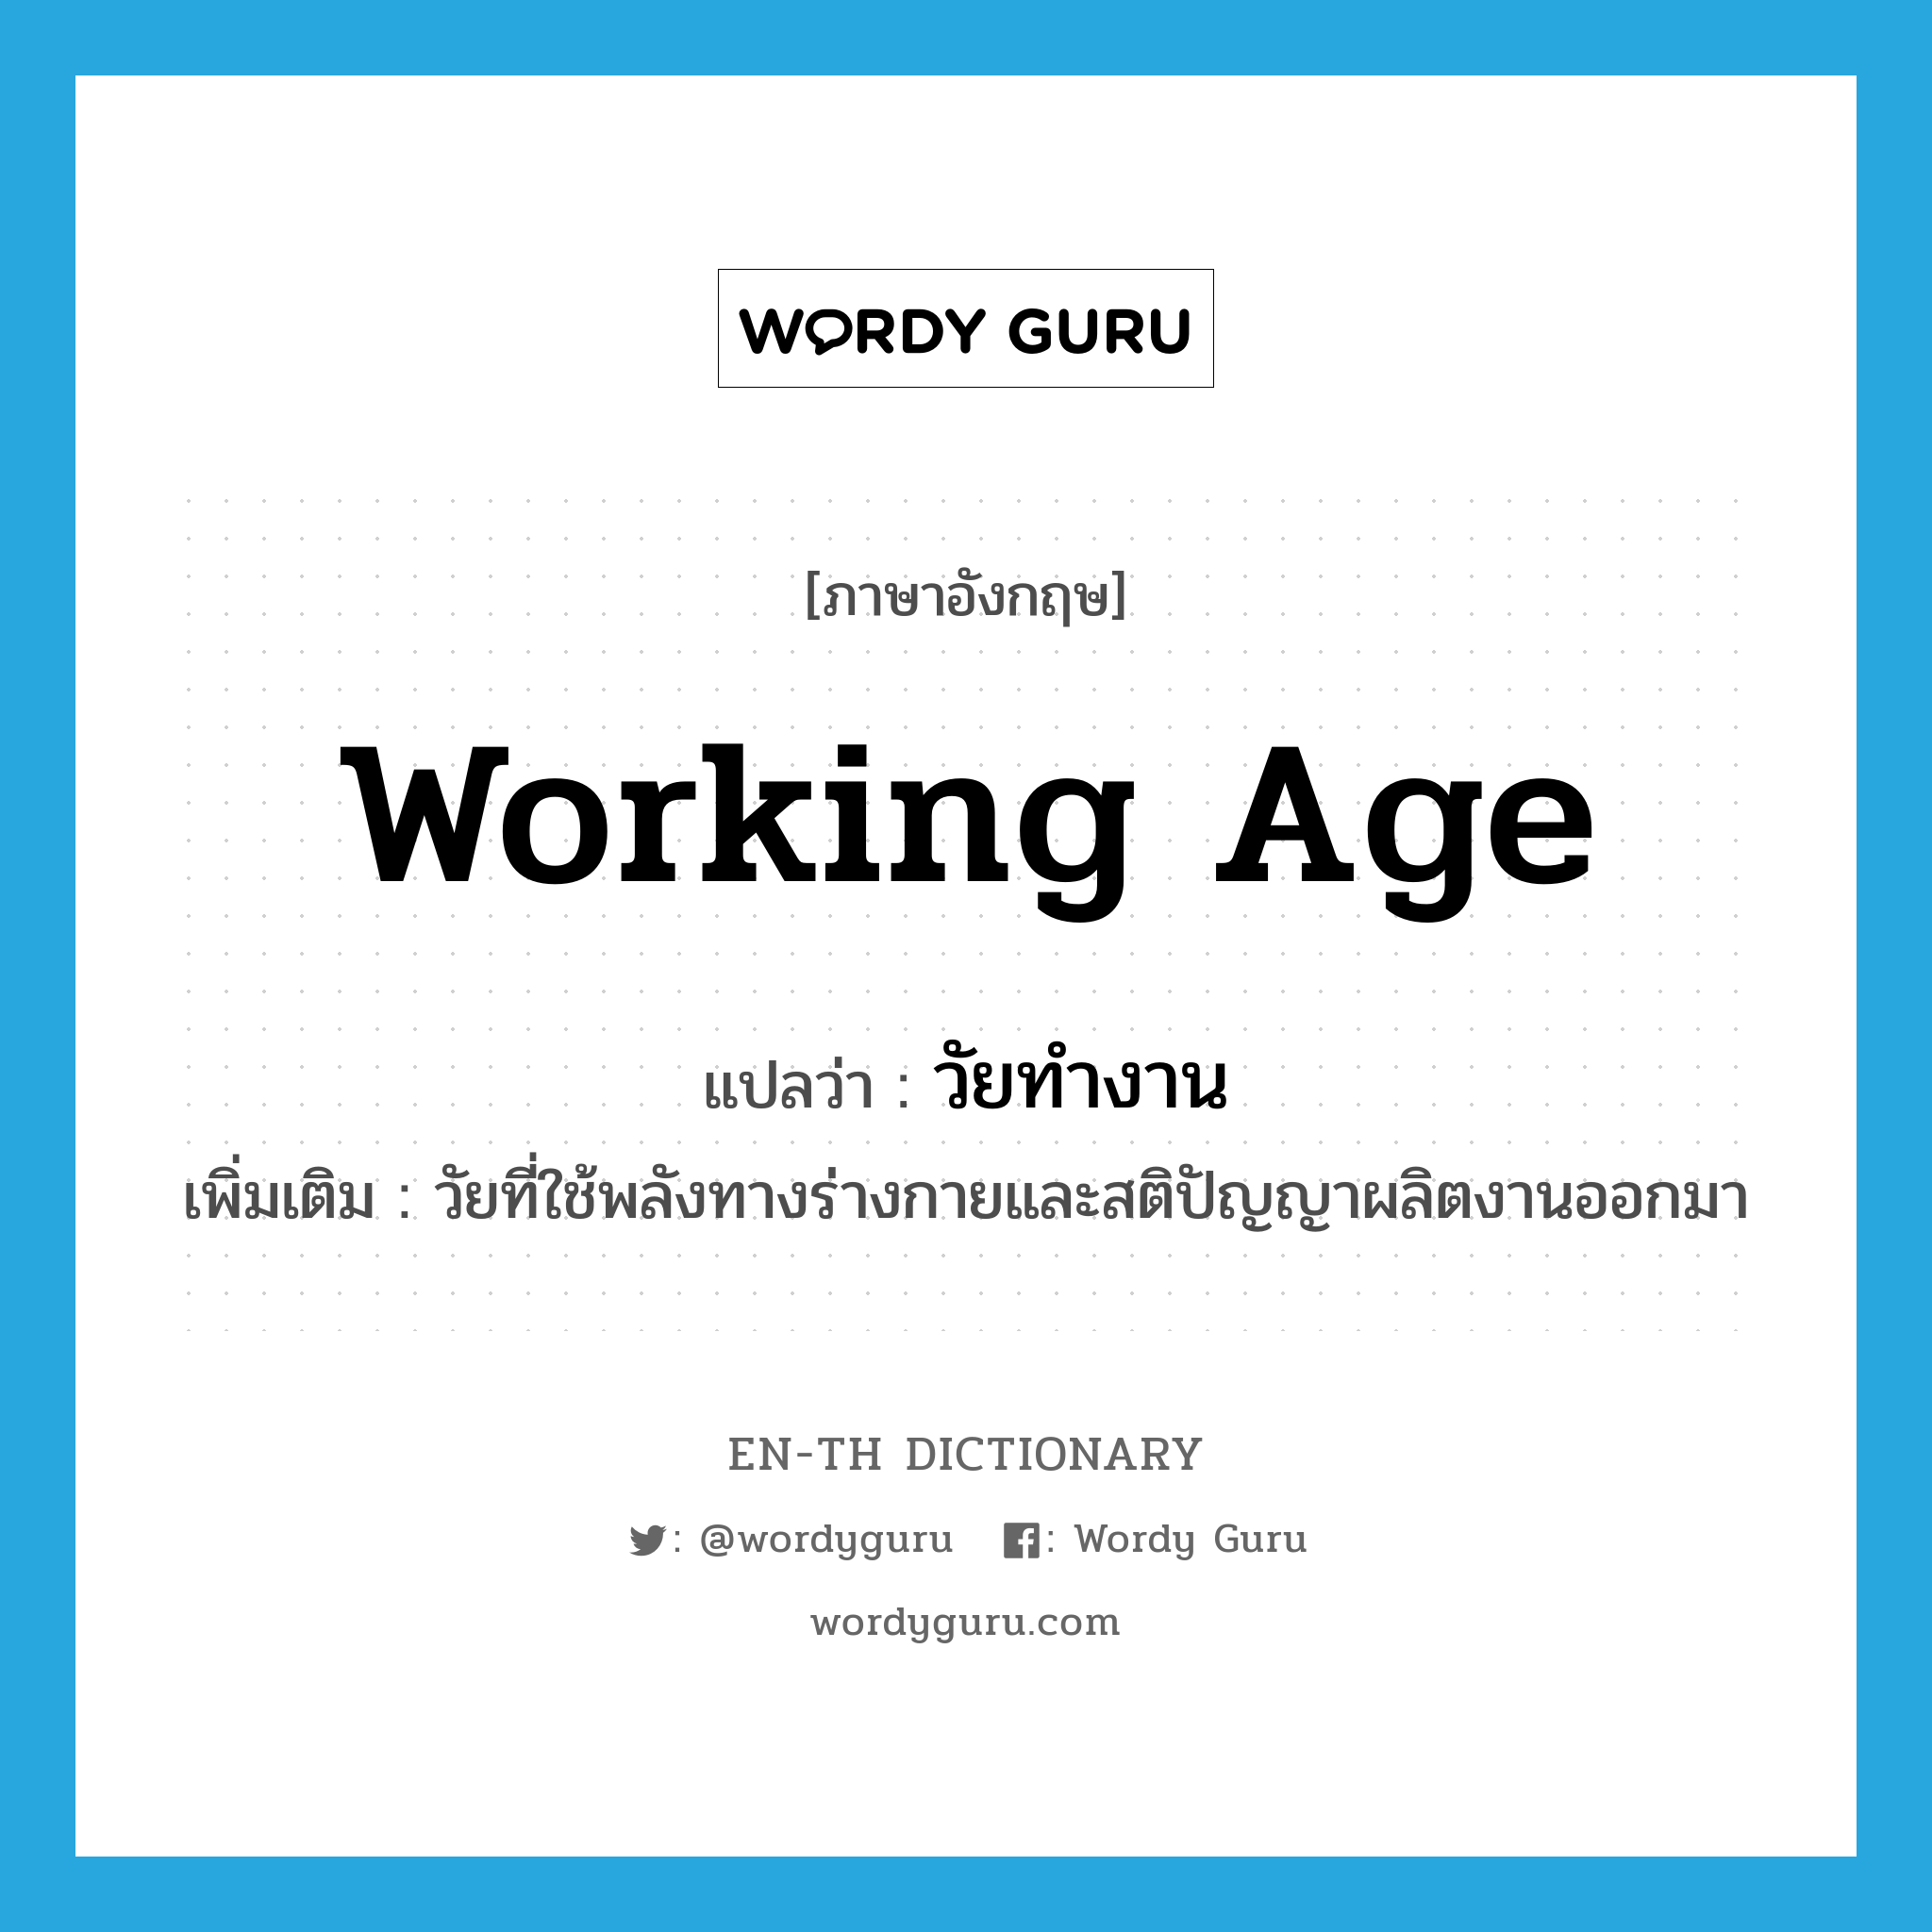 working age แปลว่า?, คำศัพท์ภาษาอังกฤษ working age แปลว่า วัยทำงาน ประเภท N เพิ่มเติม วัยที่ใช้พลังทางร่างกายและสติปัญญาผลิตงานออกมา หมวด N